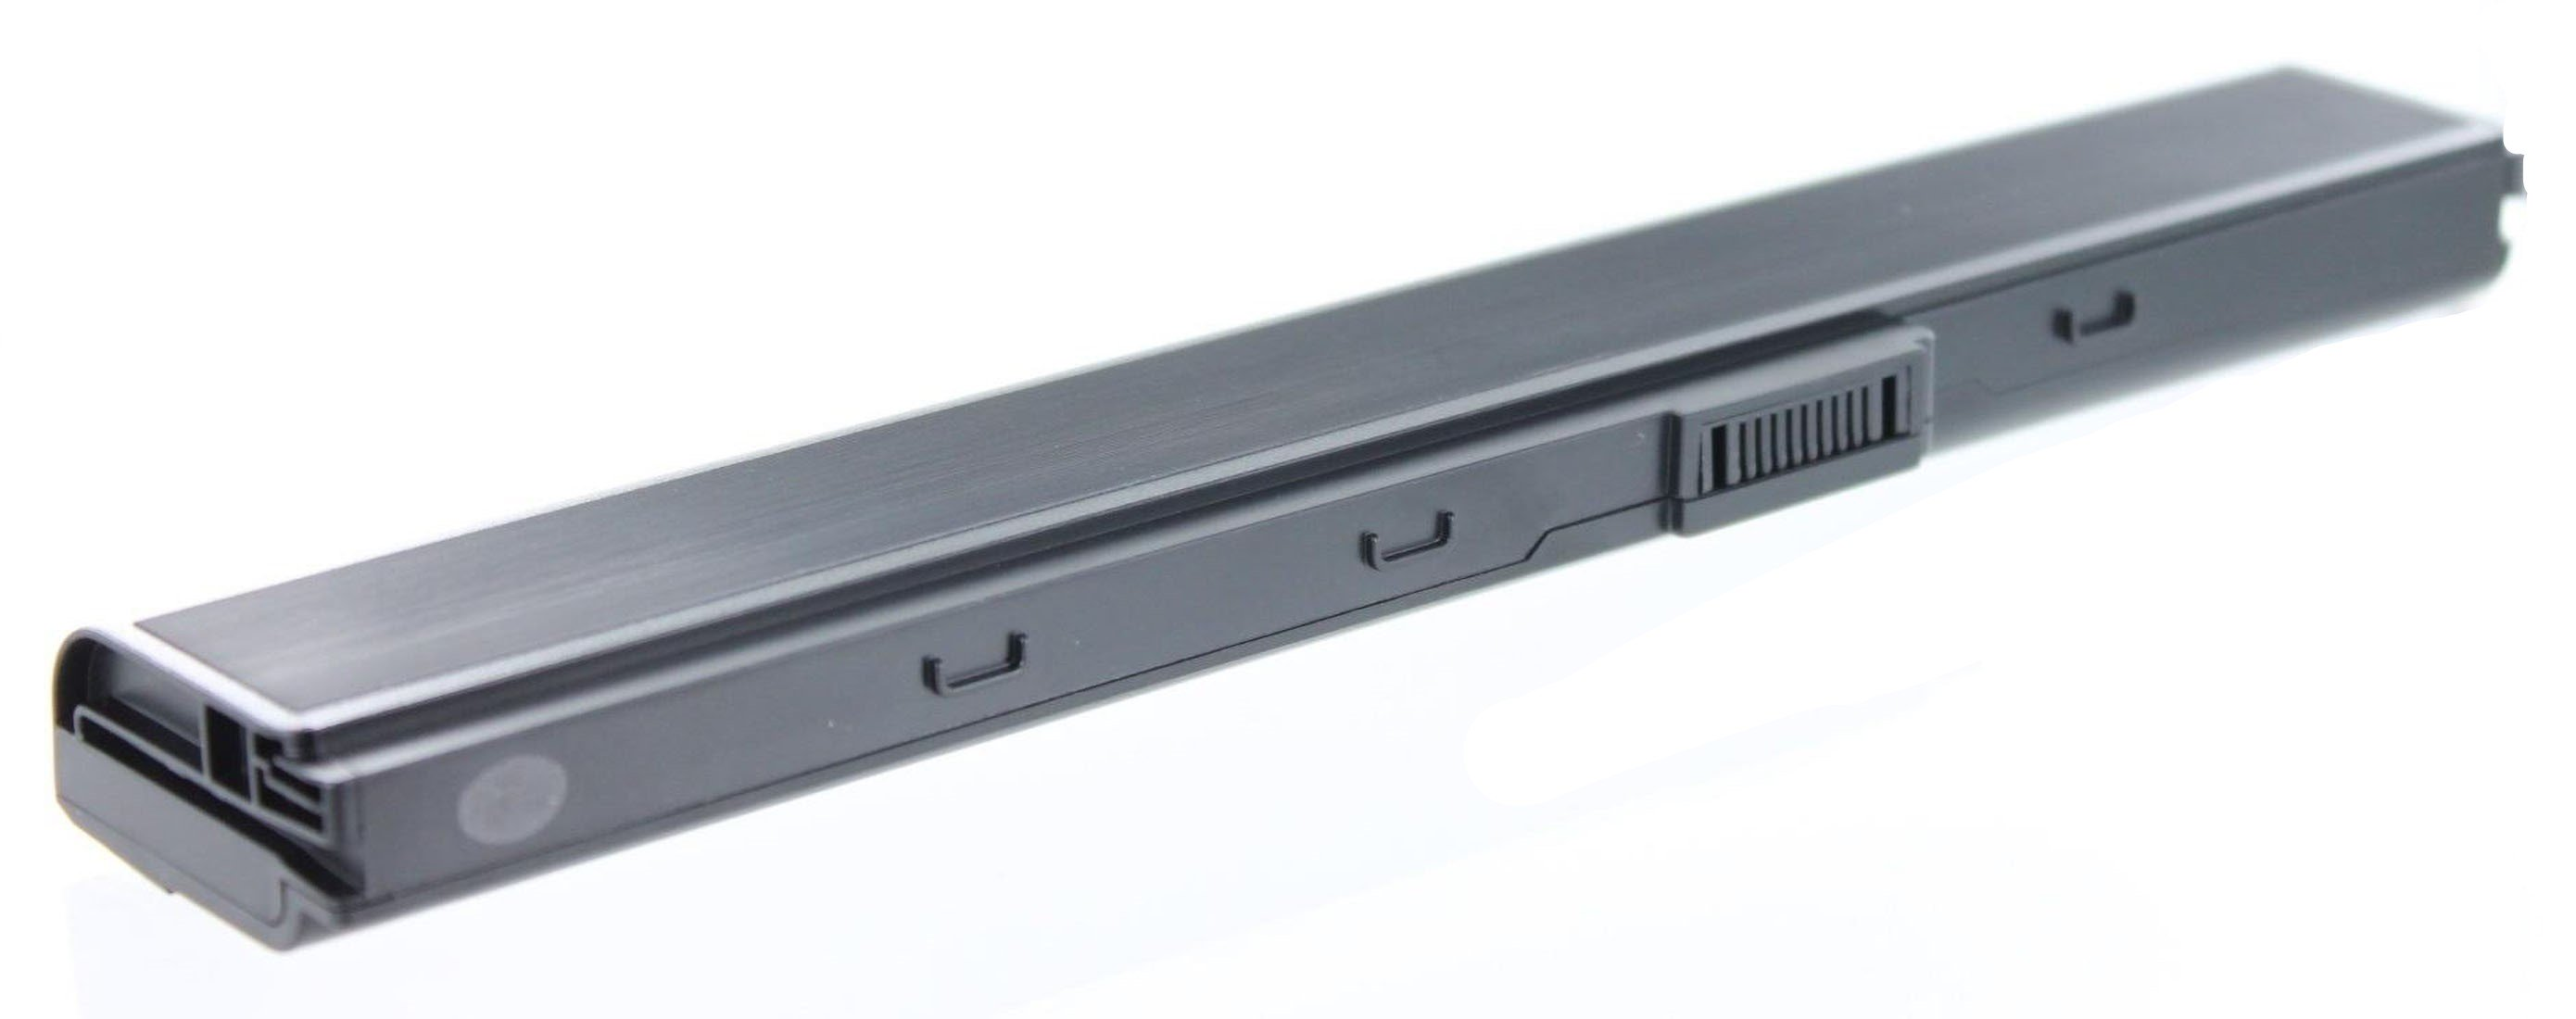 mAh AGI 4400 Notebookakku, Li-Ion 52JU-SX116V Akku kompatibel Pro Asus 10.8 Volt, mit